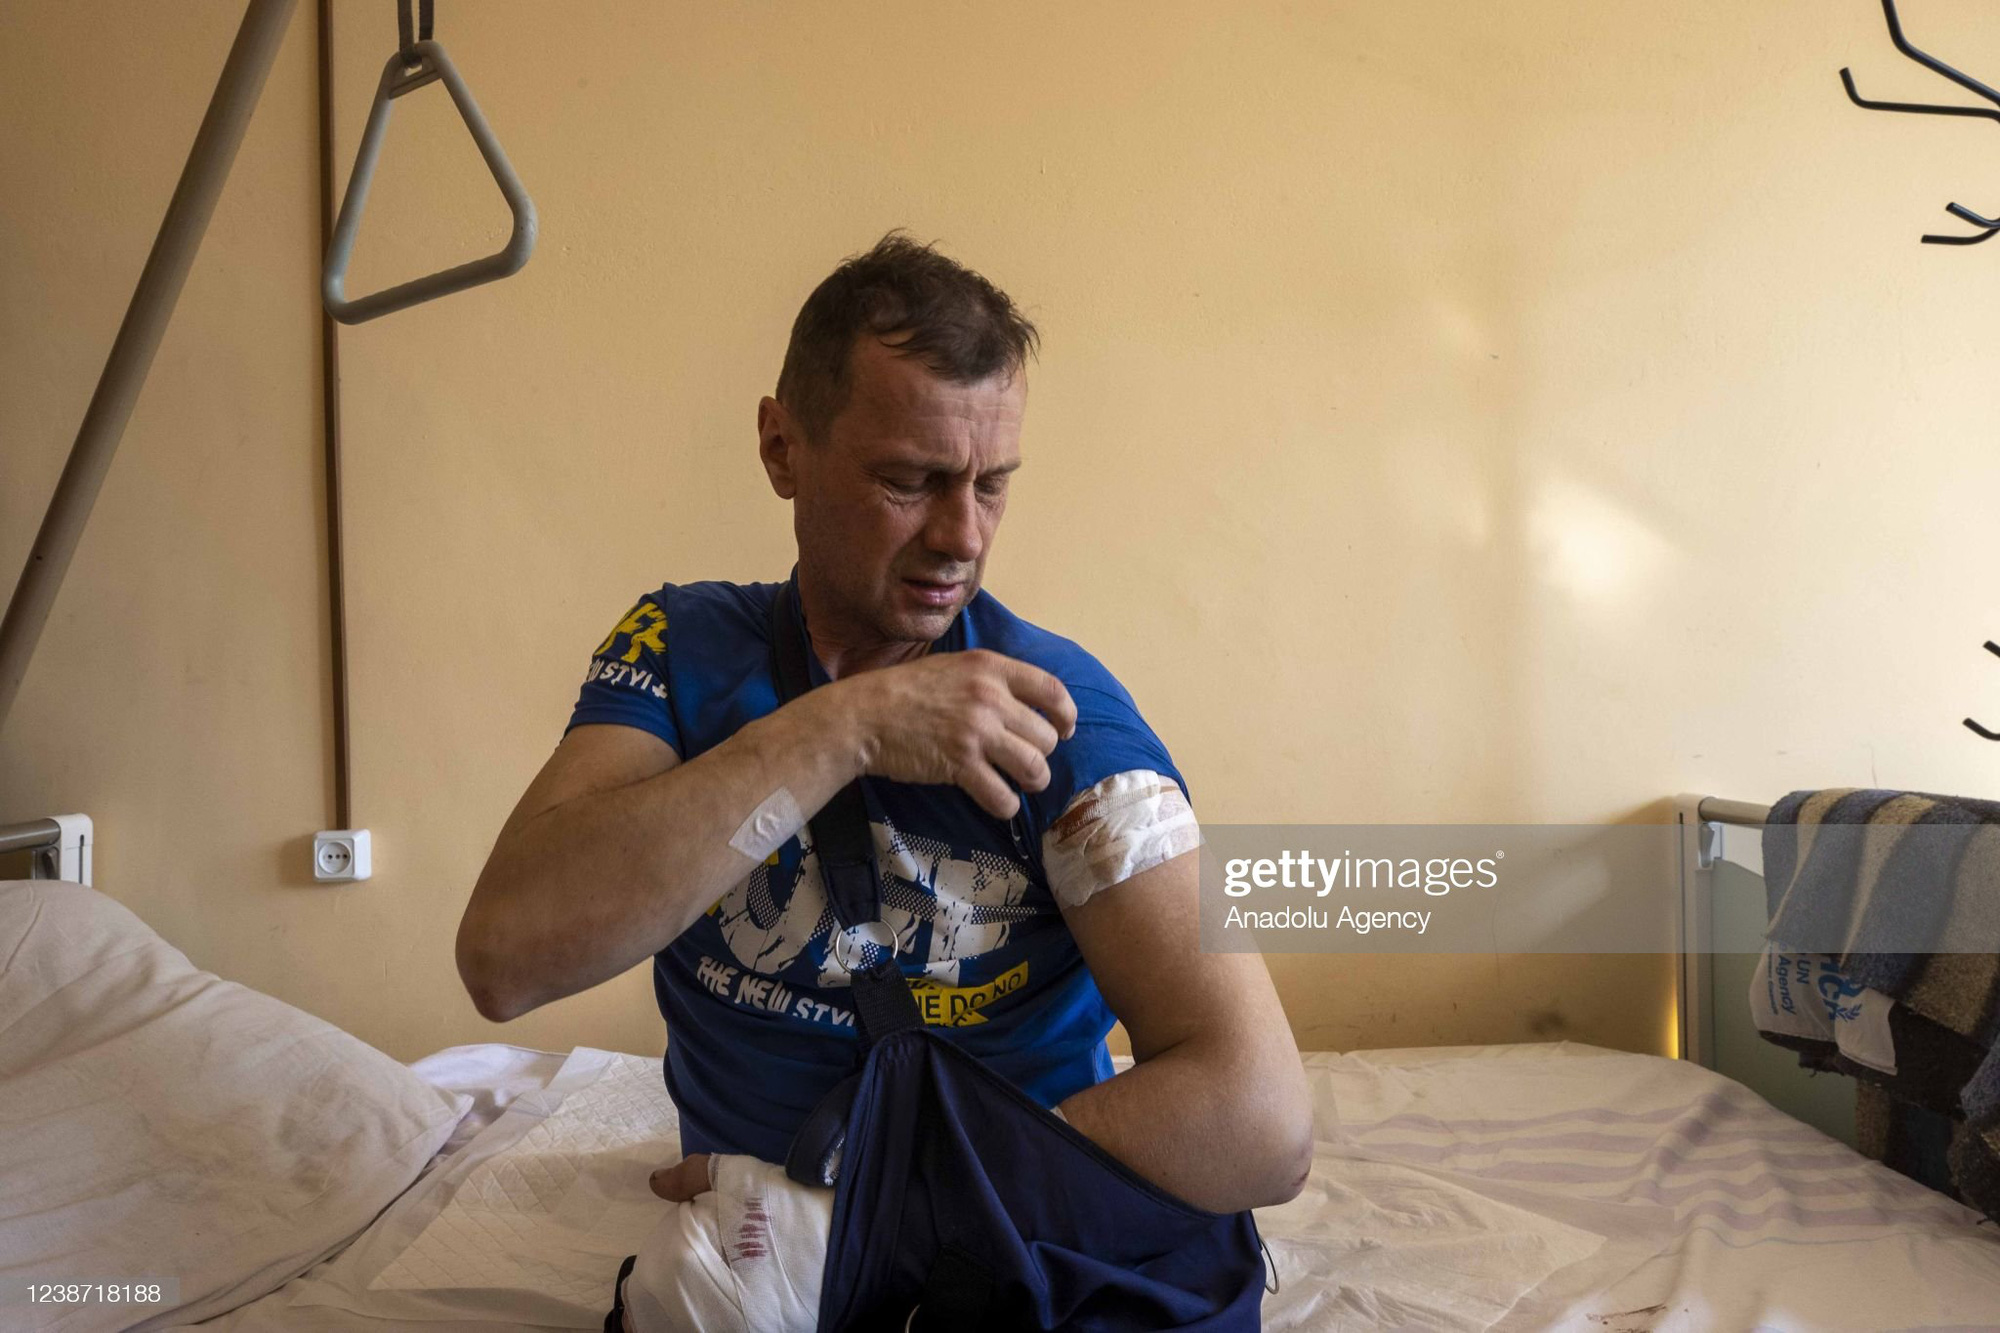 Những hình ảnh tang thương và loạn lạc tại Ukraine sau cuộc không kích - Ảnh 6.